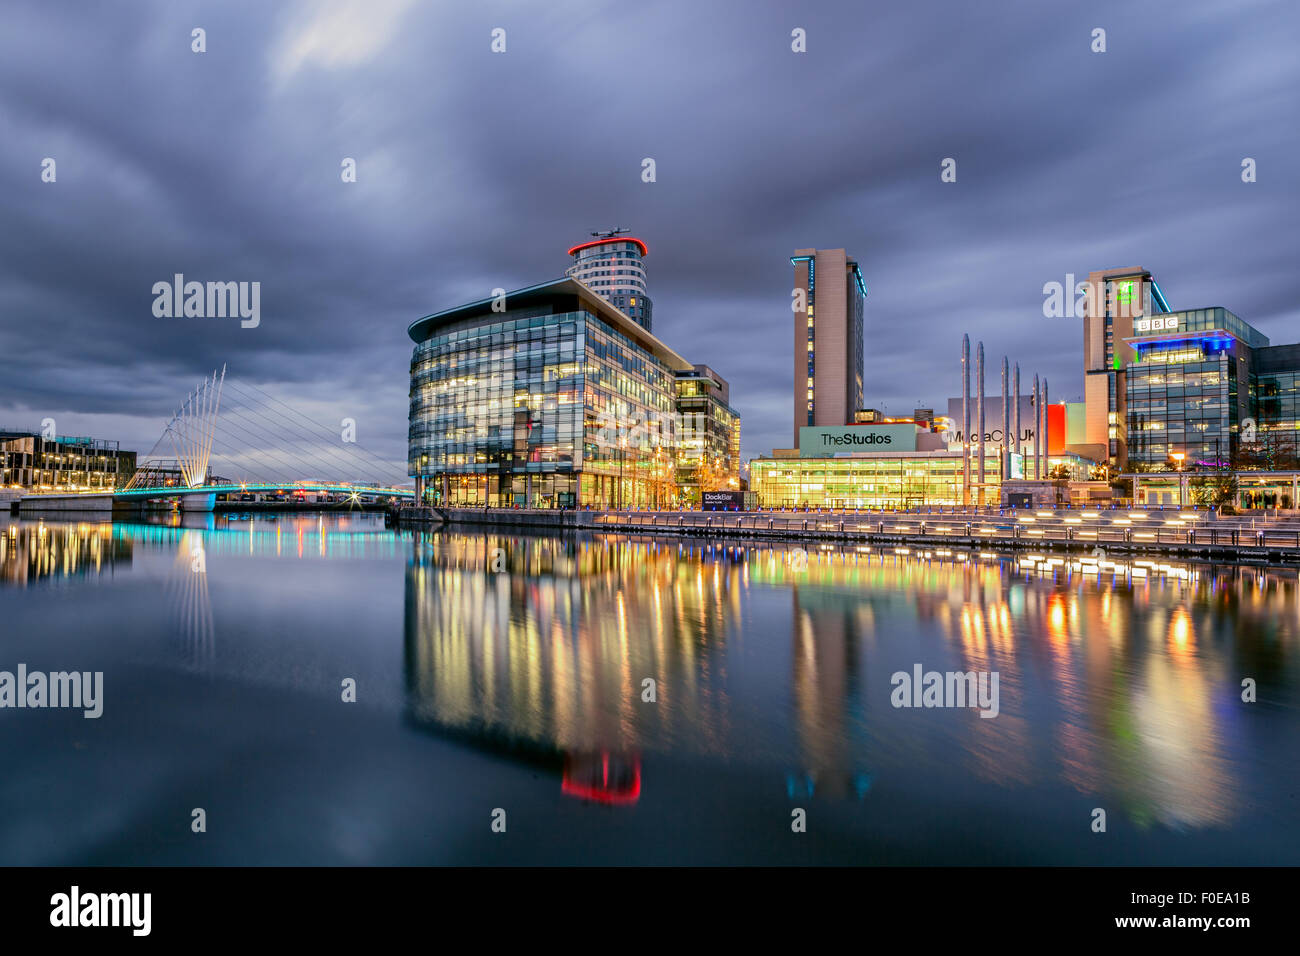 BBC media city à Salford Quays, Manchester en Angleterre. Vue panoramique des édifices modernes au crépuscule. Banque D'Images